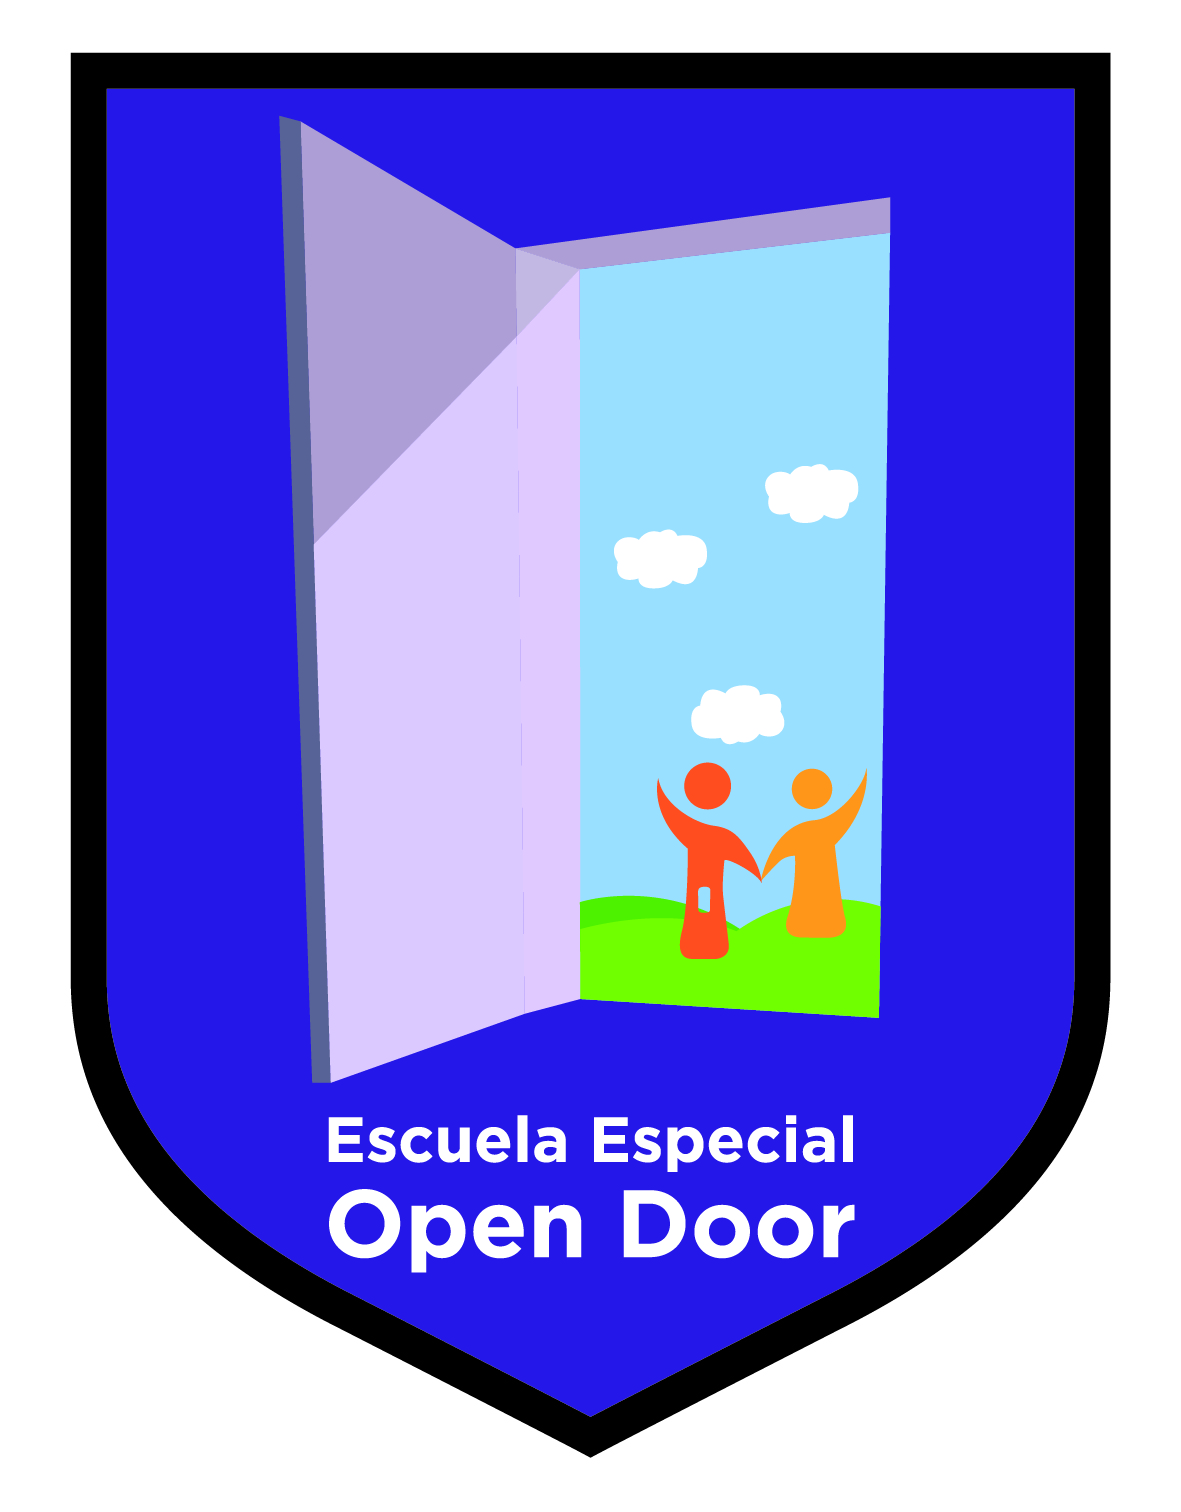 ESCUELA ESPECIAL OPEN DOOR